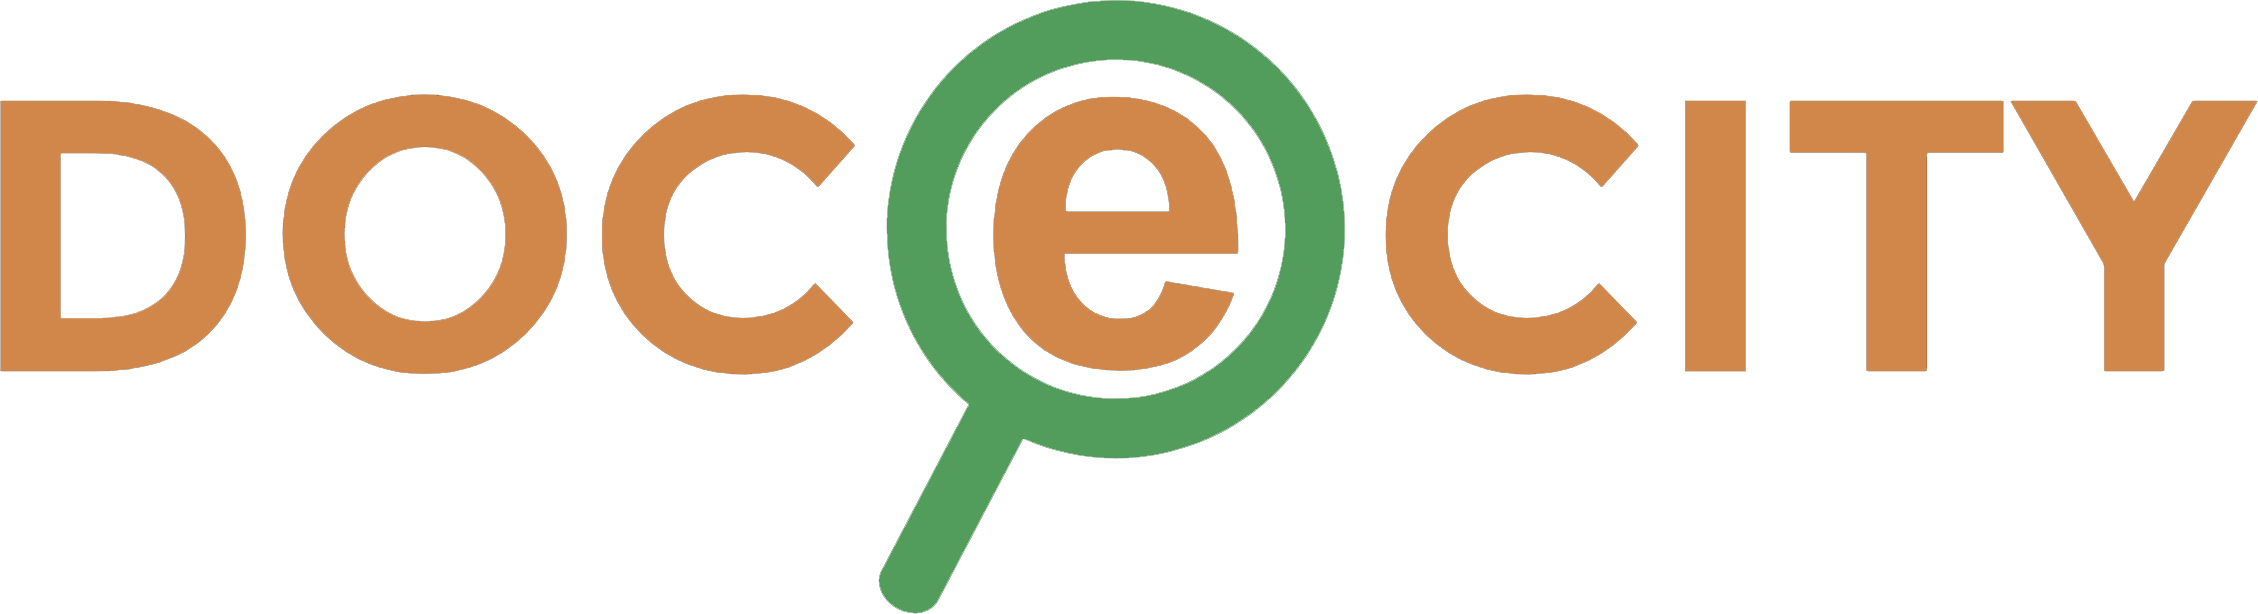 docecity logo